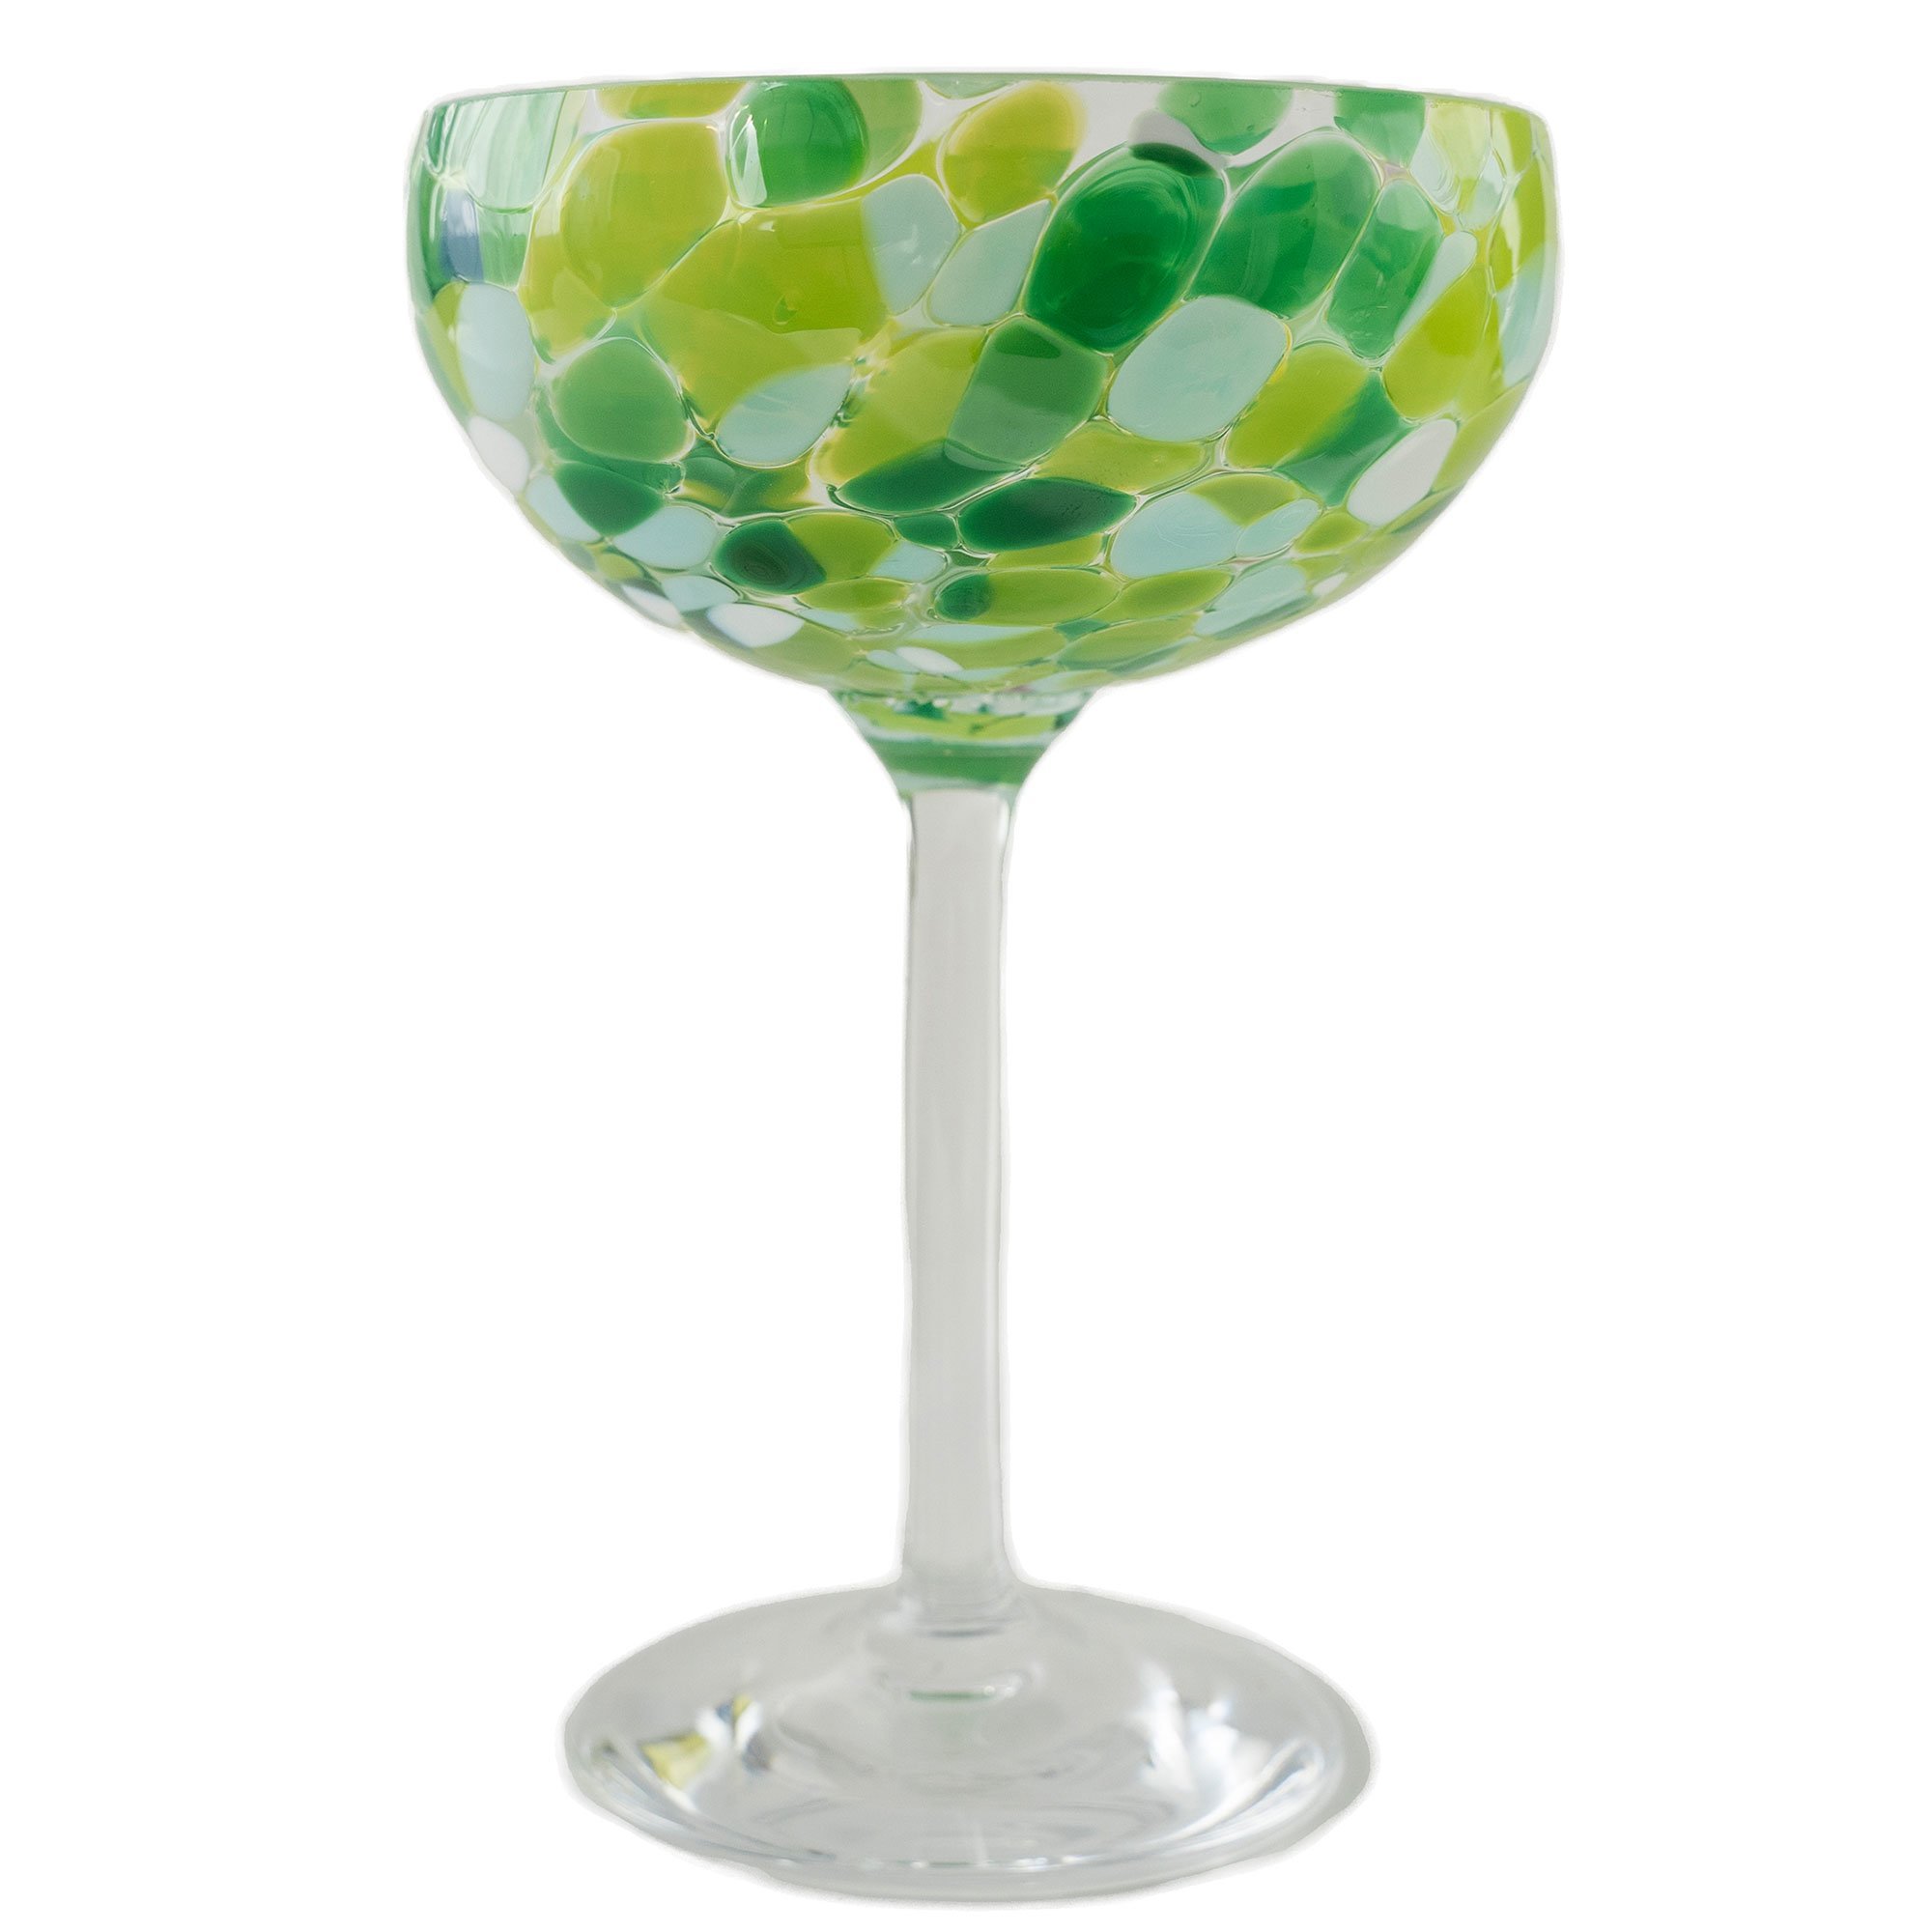 Magnor Swirl champagneglas 22 cl, grön